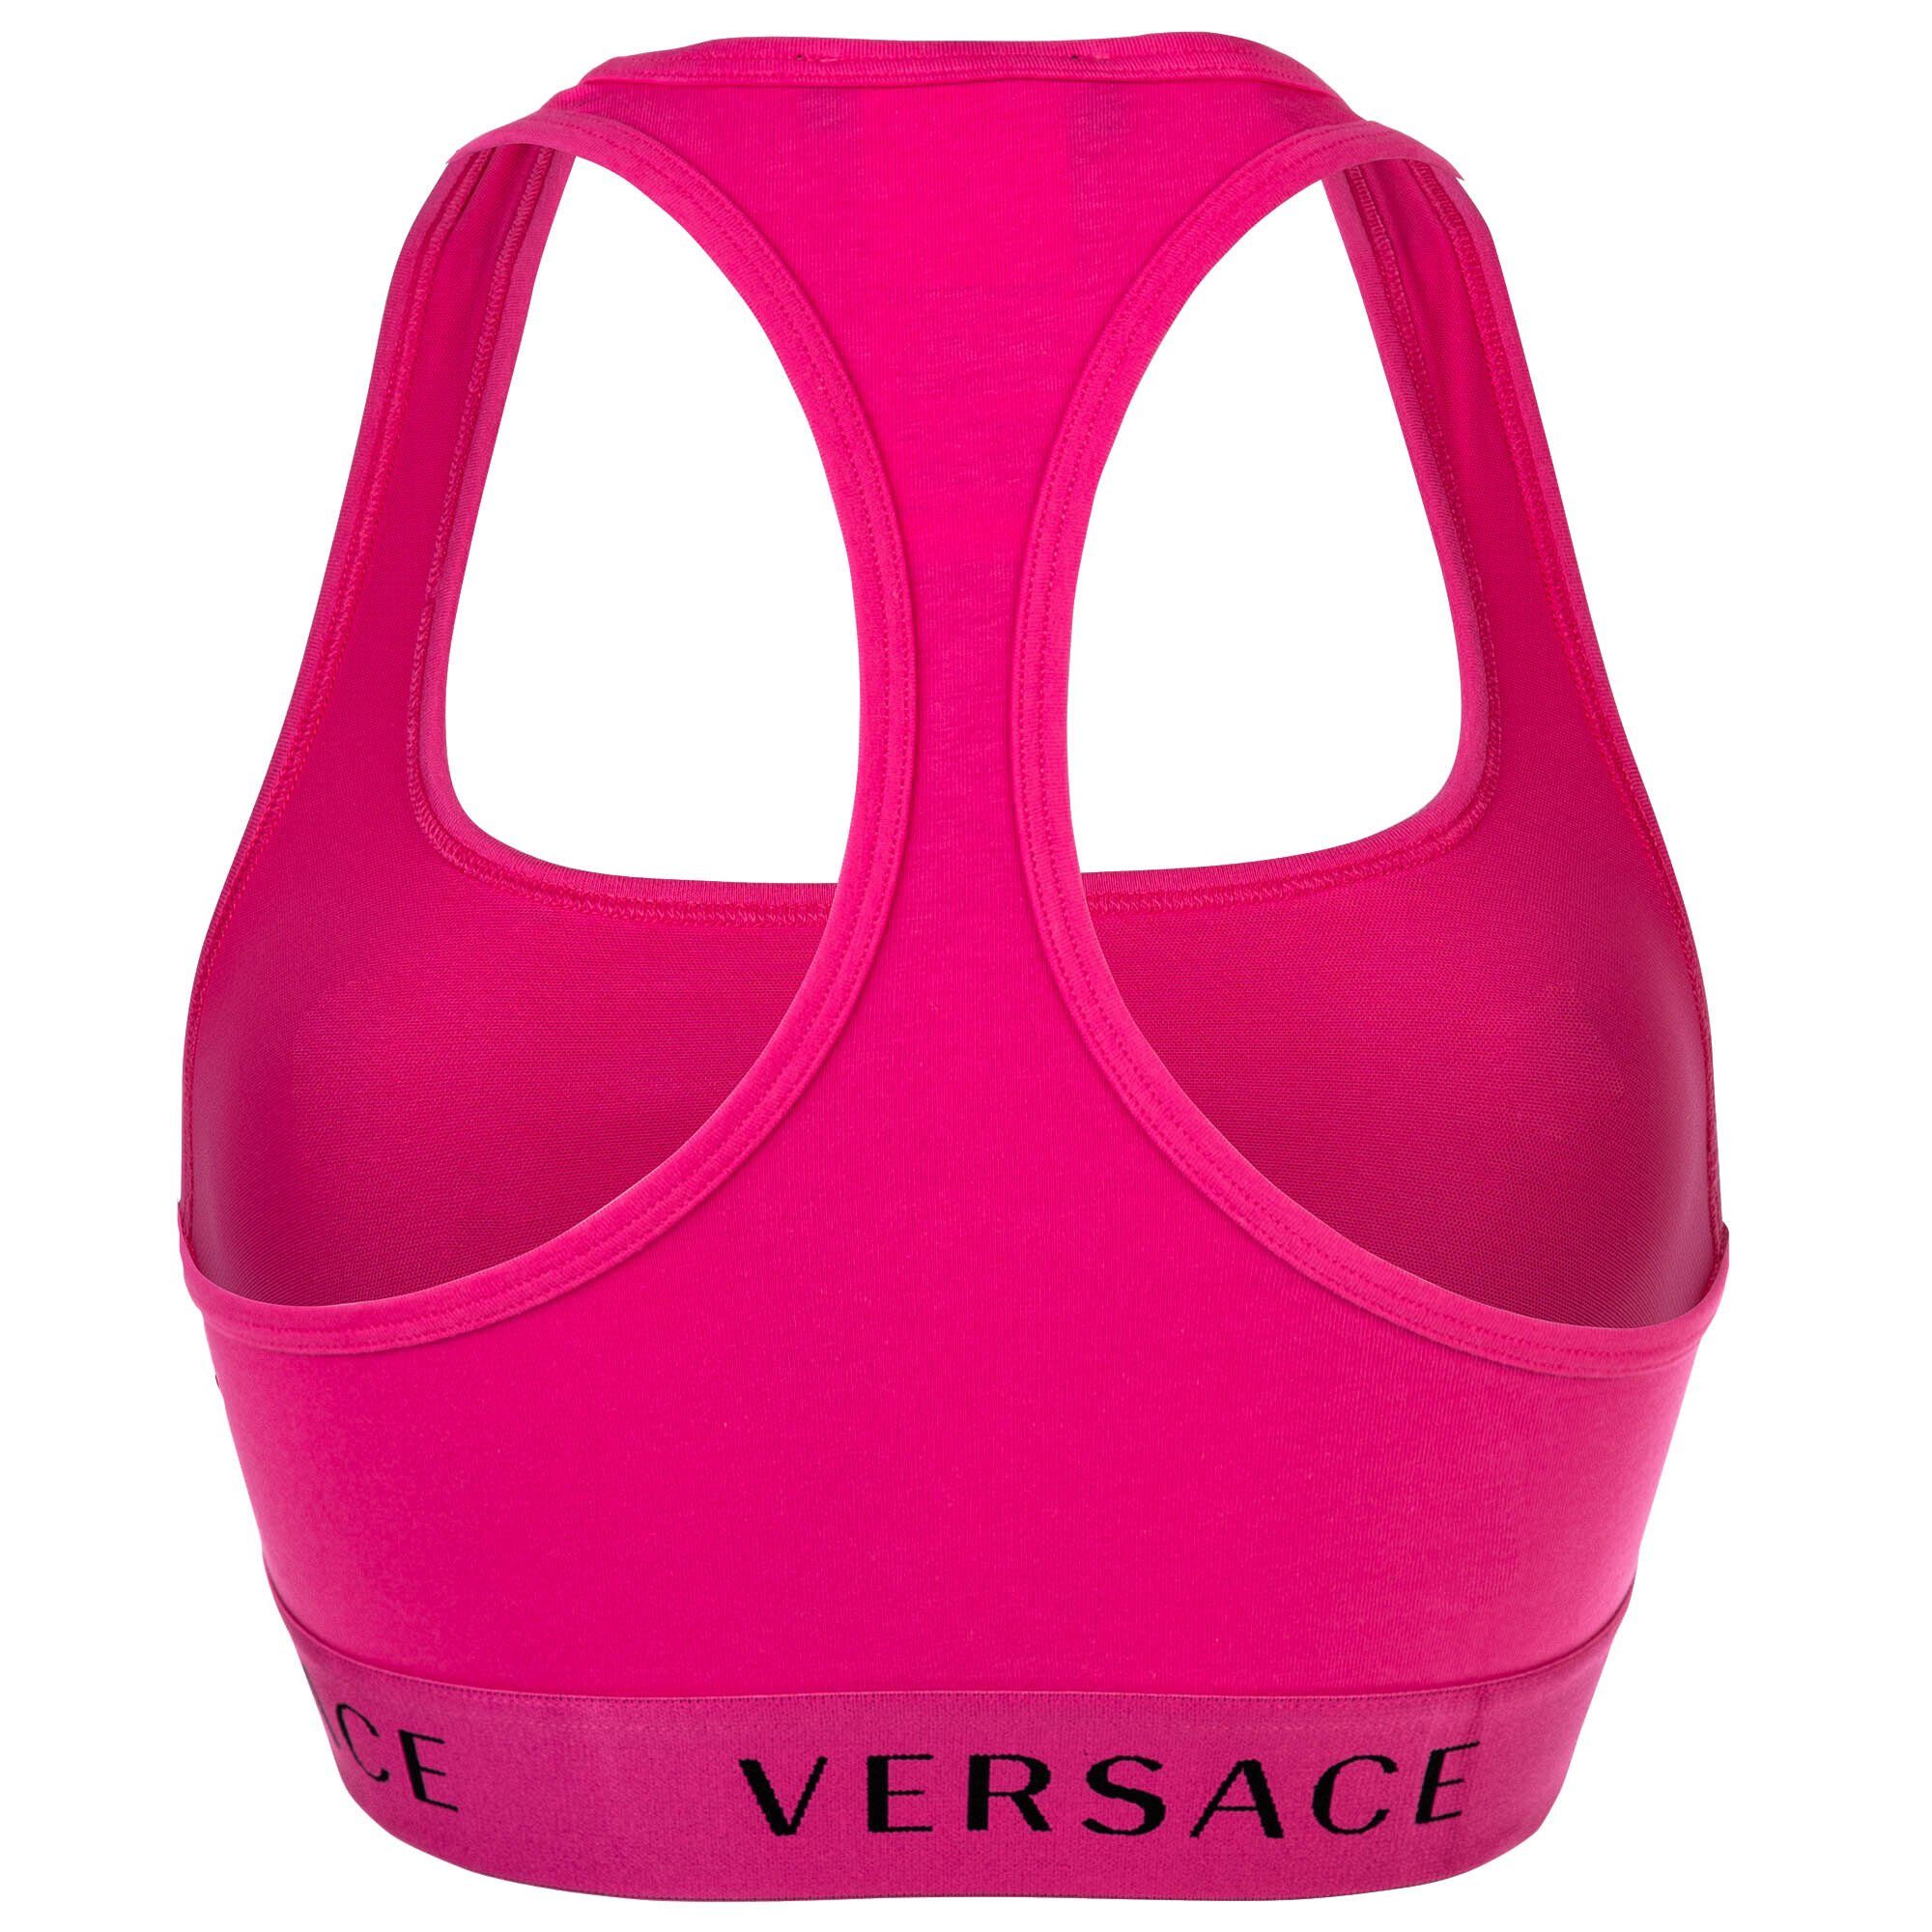 Versace Bustier Damen Bustier - Unterwäsche, Bralette Bra Pink